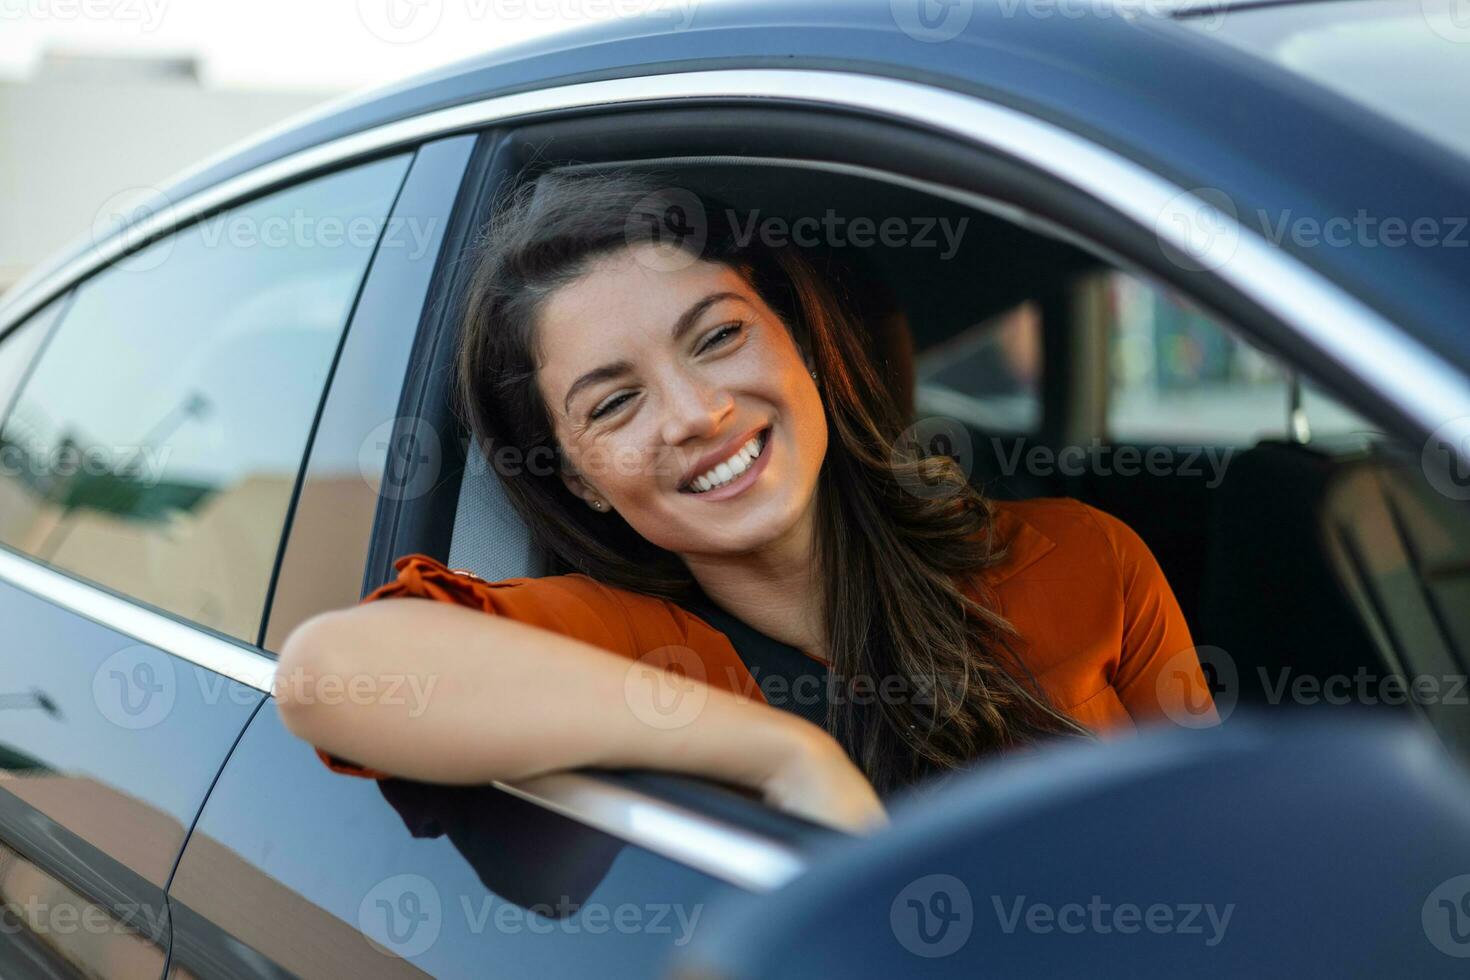 jeune femme assise dans une main de voiture par la fenêtre. femme heureuse au volant d'une voiture et souriant. portrait d'une conductrice heureuse conduisant une voiture avec ceinture de sécurité. jolie jeune femme heureuse de conduire une voiture. photo